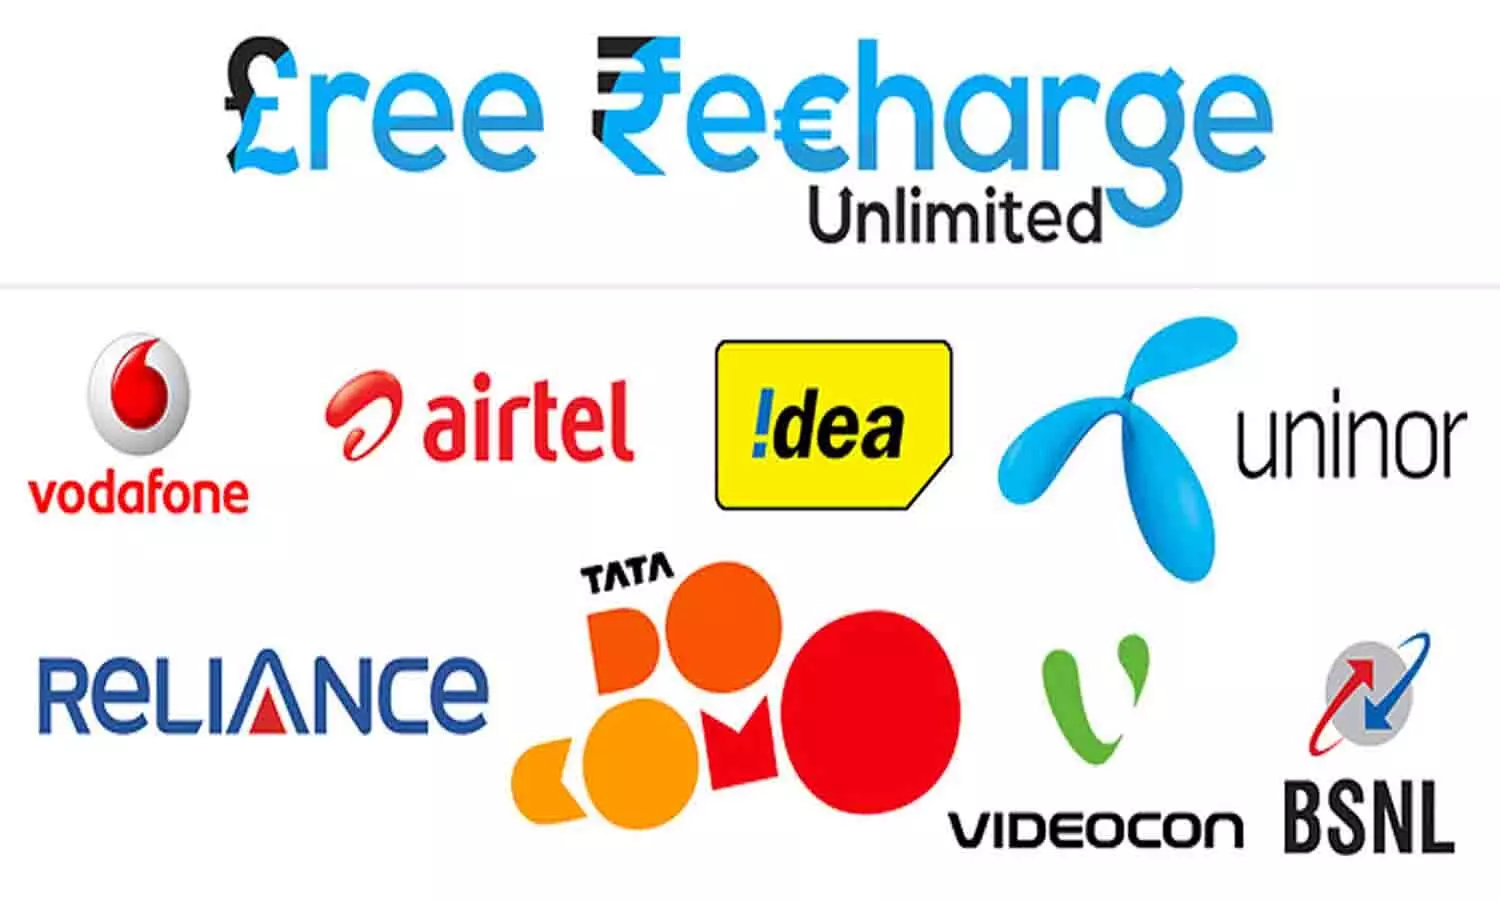 Earn Read Free Recharge: Jio, Airtel और VI के ग्राहकों को फ्री इंटरनेट रिचार्ज? जानिए पूरी Details